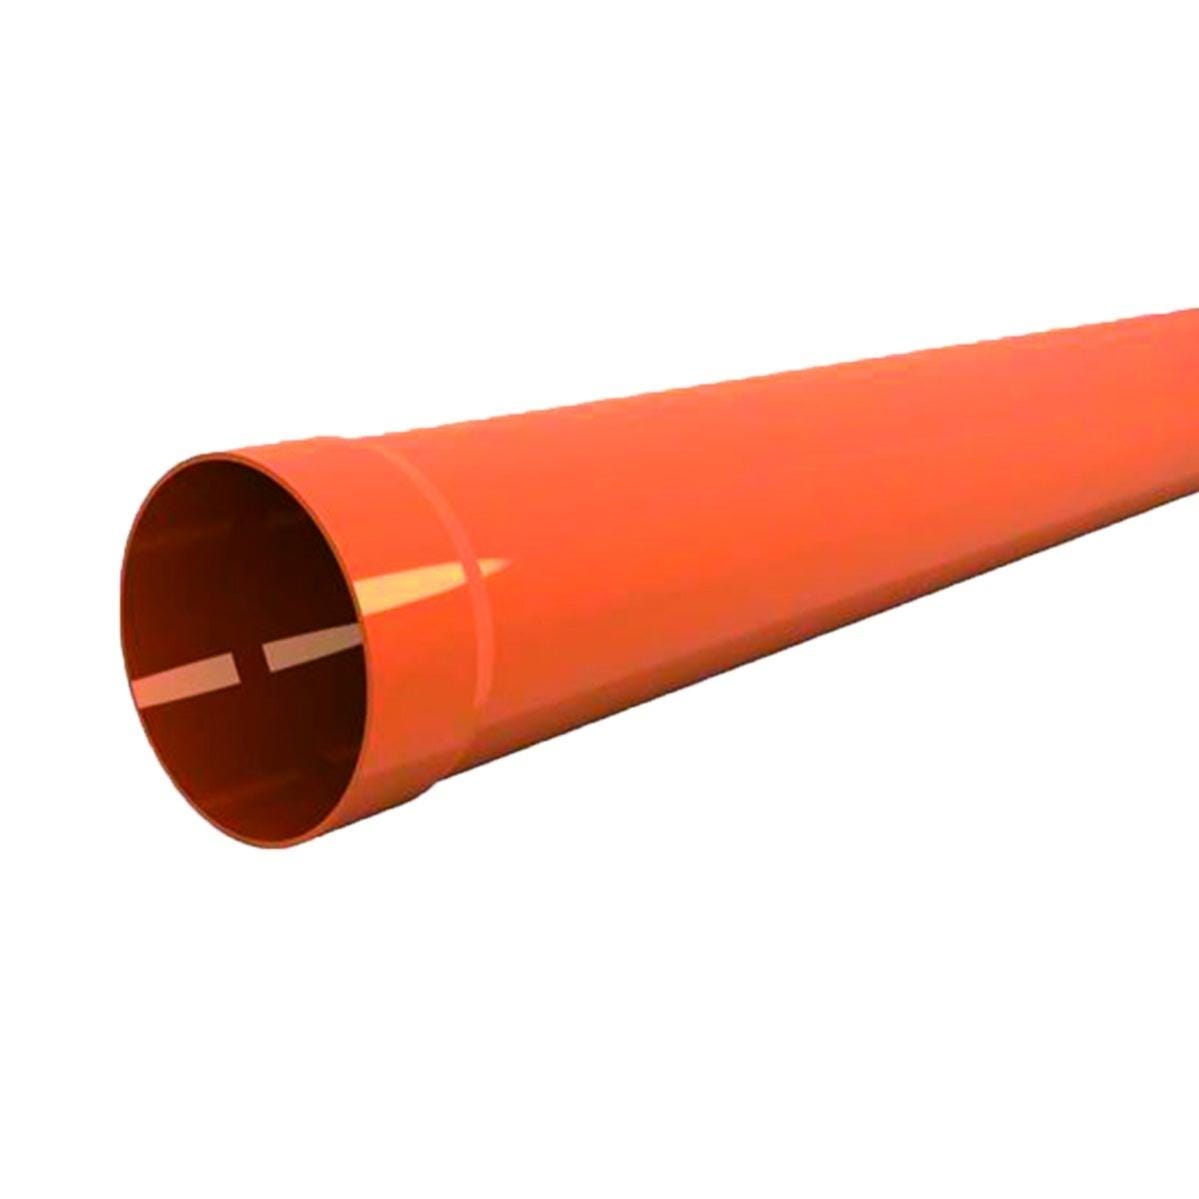 Tubo per evacuazione acqua arancio in pvc Ø 140 mm L 2 m